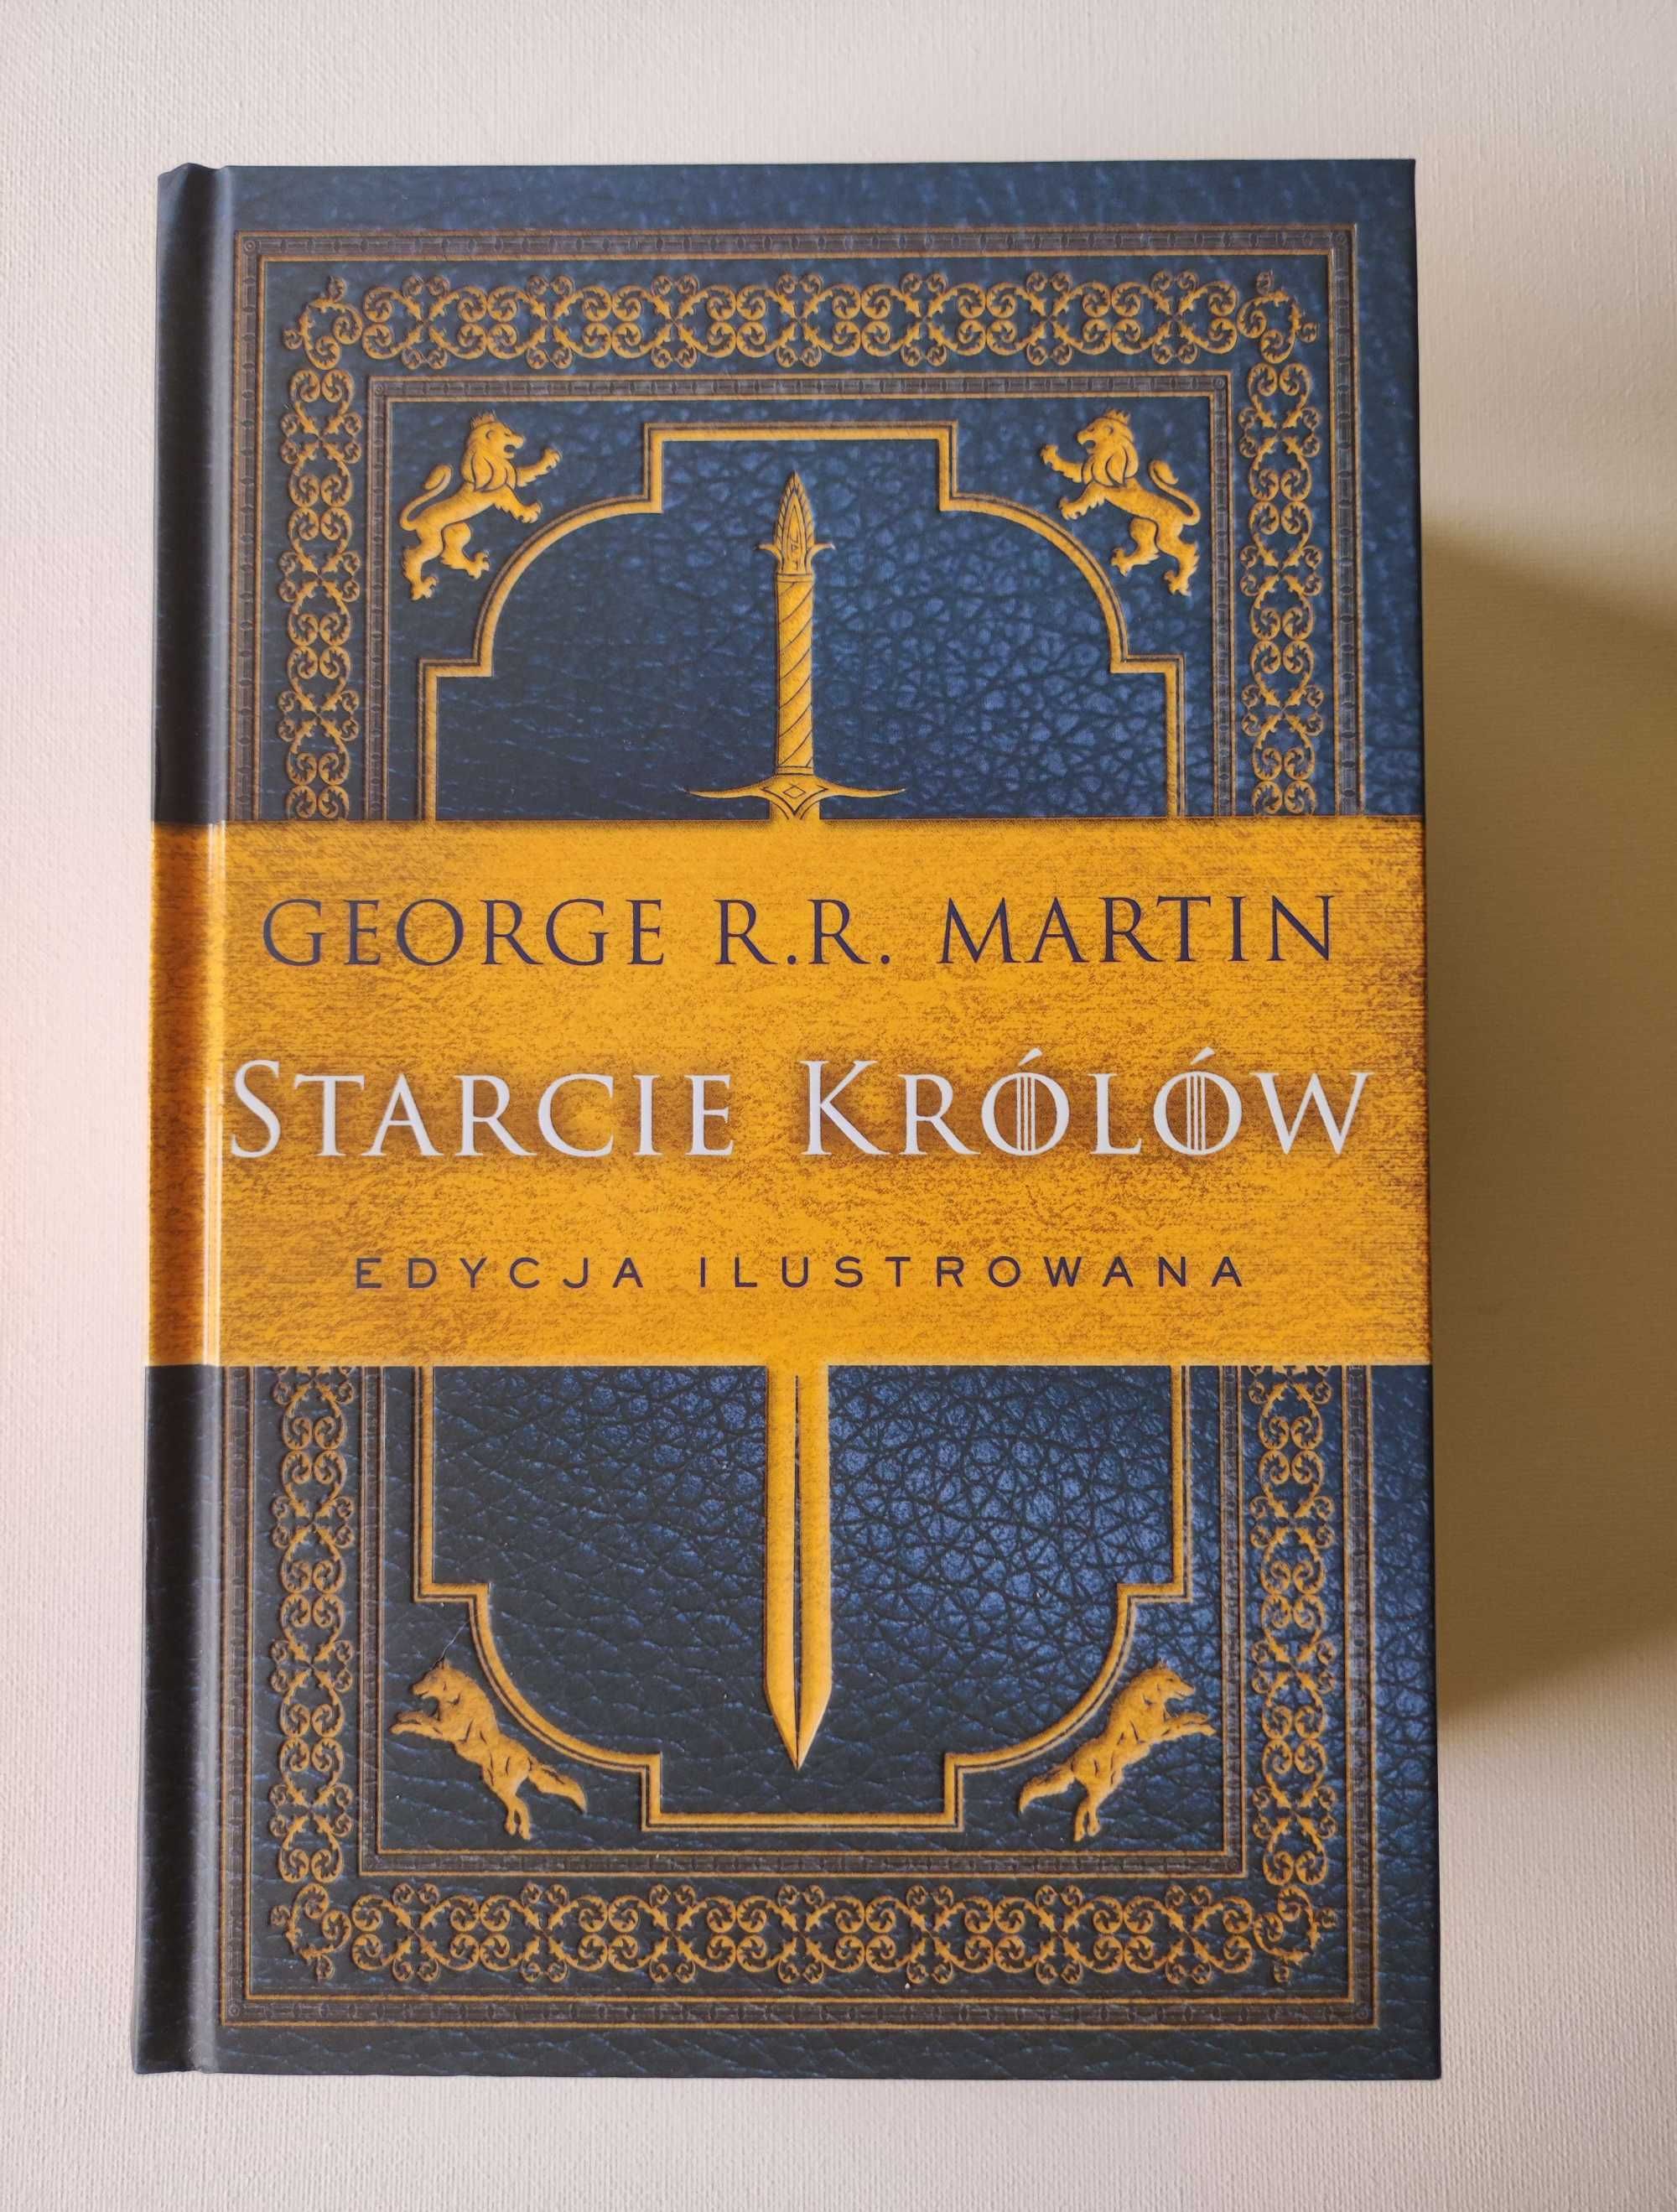 "Starcie królów" George R. R. Martin unikatowa edycja ilustrowana